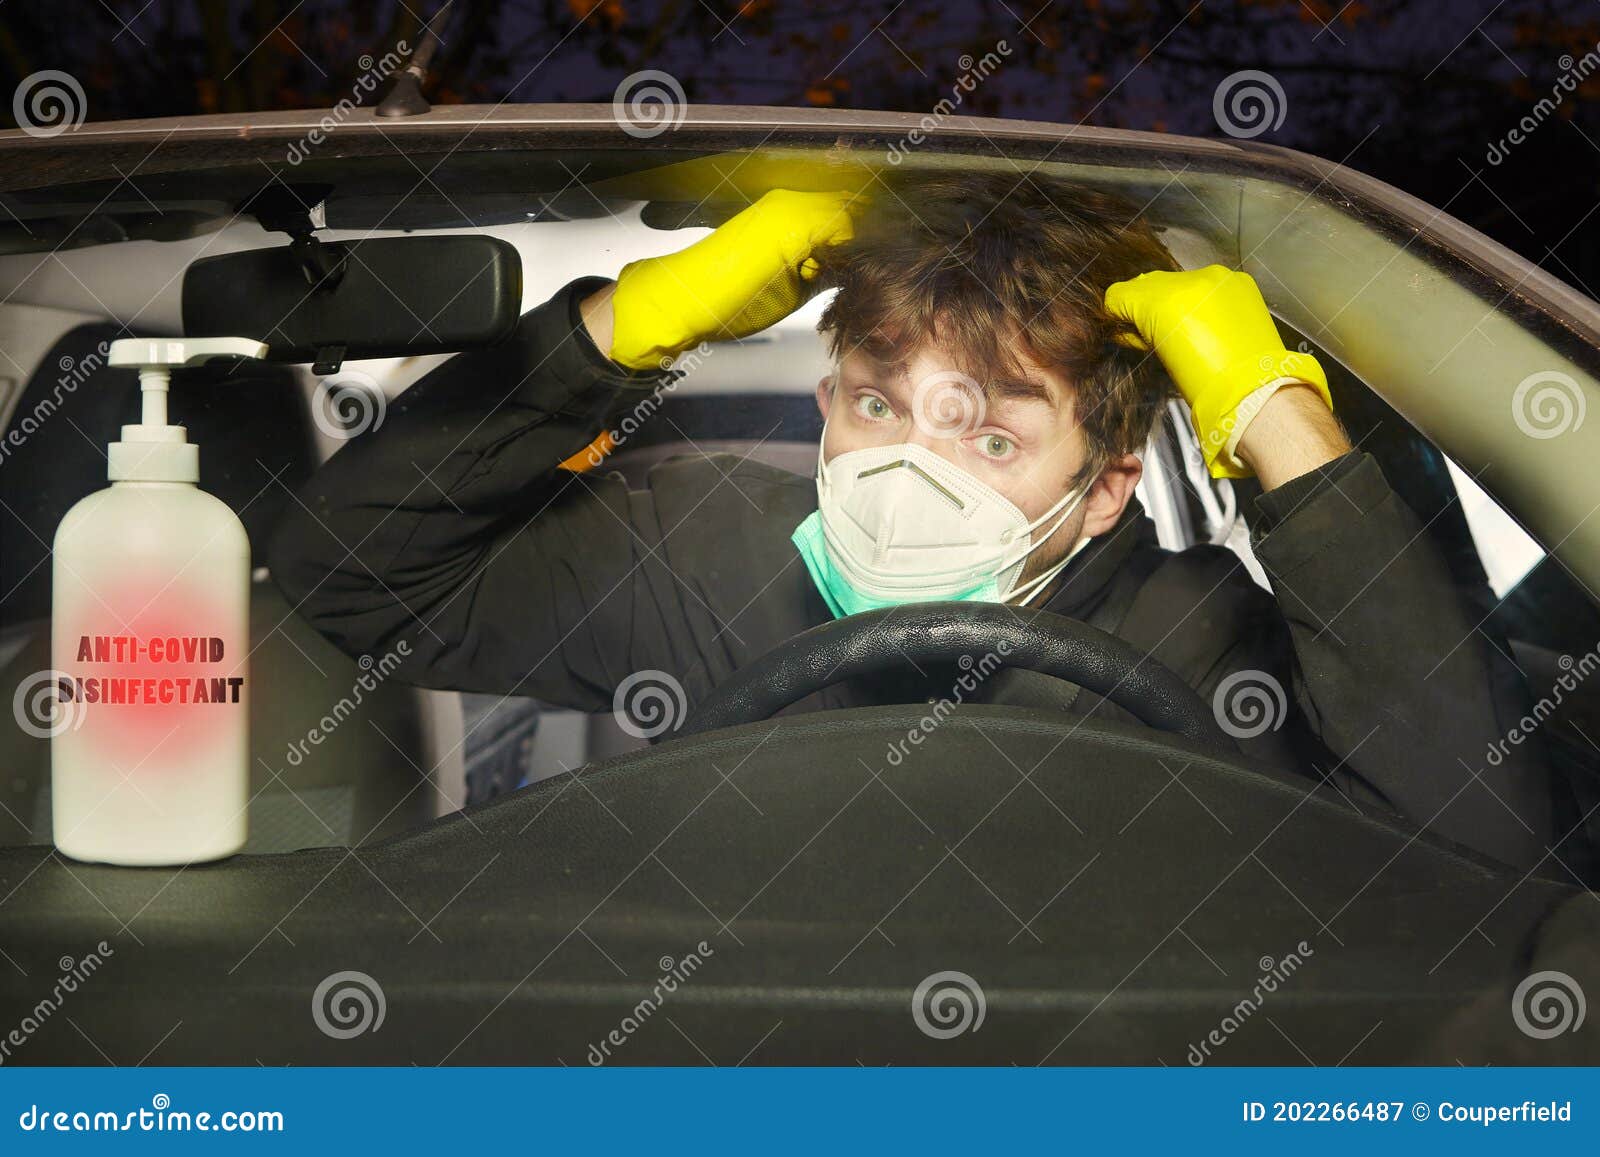 Fahrer Mit Maske Und Handschuhe, Die Autokabine Mit Desinfektionsmittel  Gereinigt Werden, Stockbild - Bild von gefahr, verrückt: 202266487